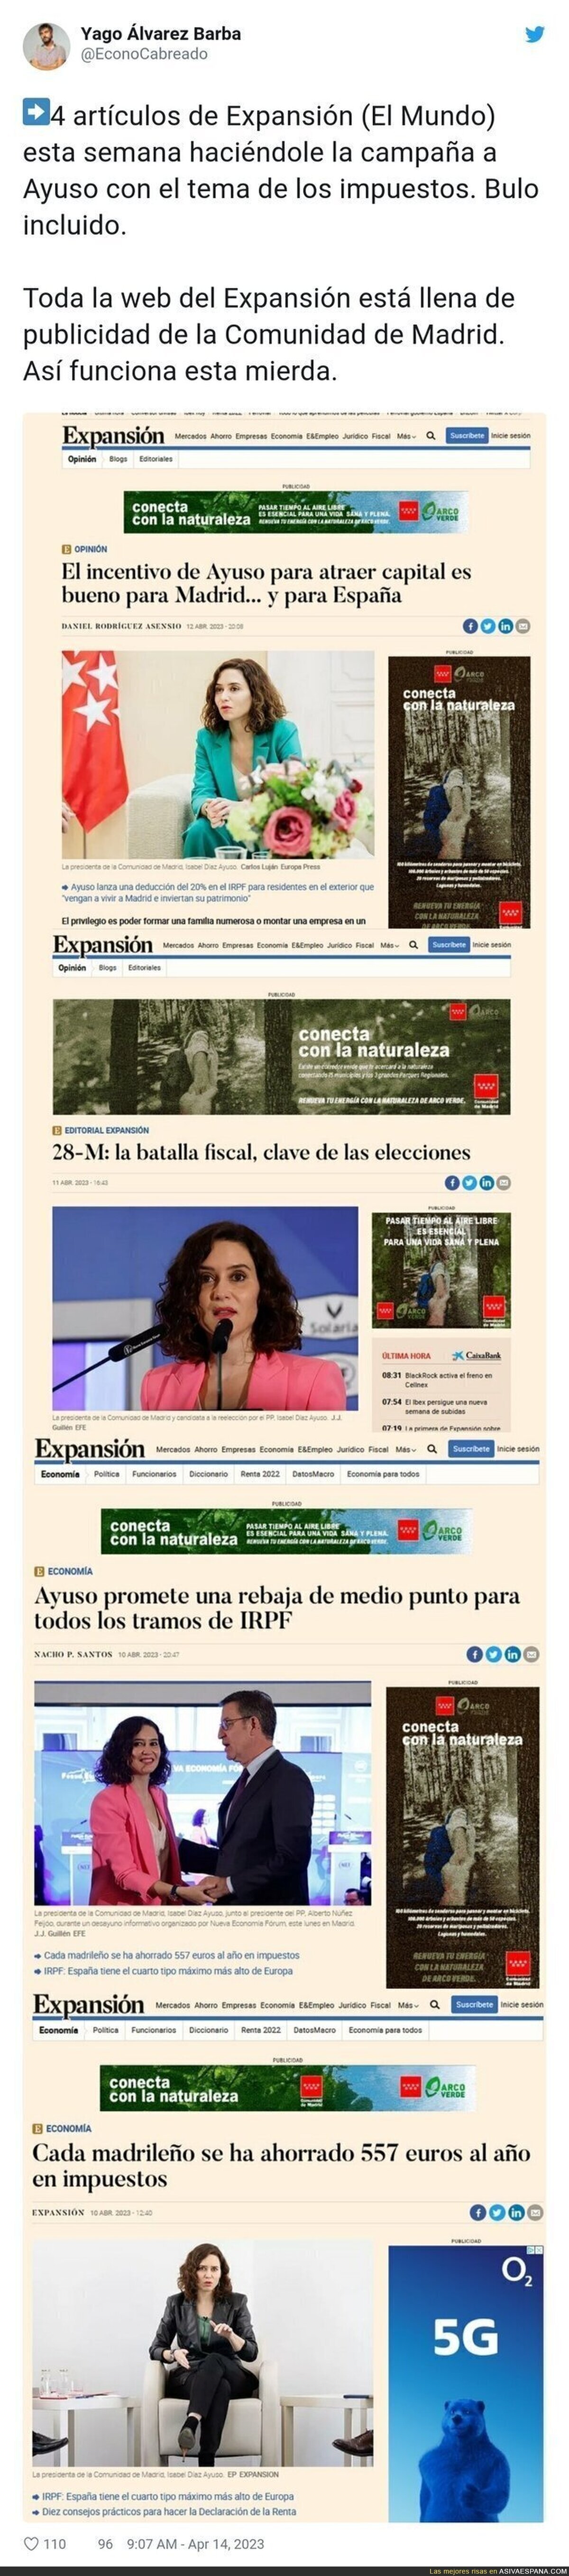 Así es como el diario El Mundo llena su web de publicidad de la Comunidad de Madrid